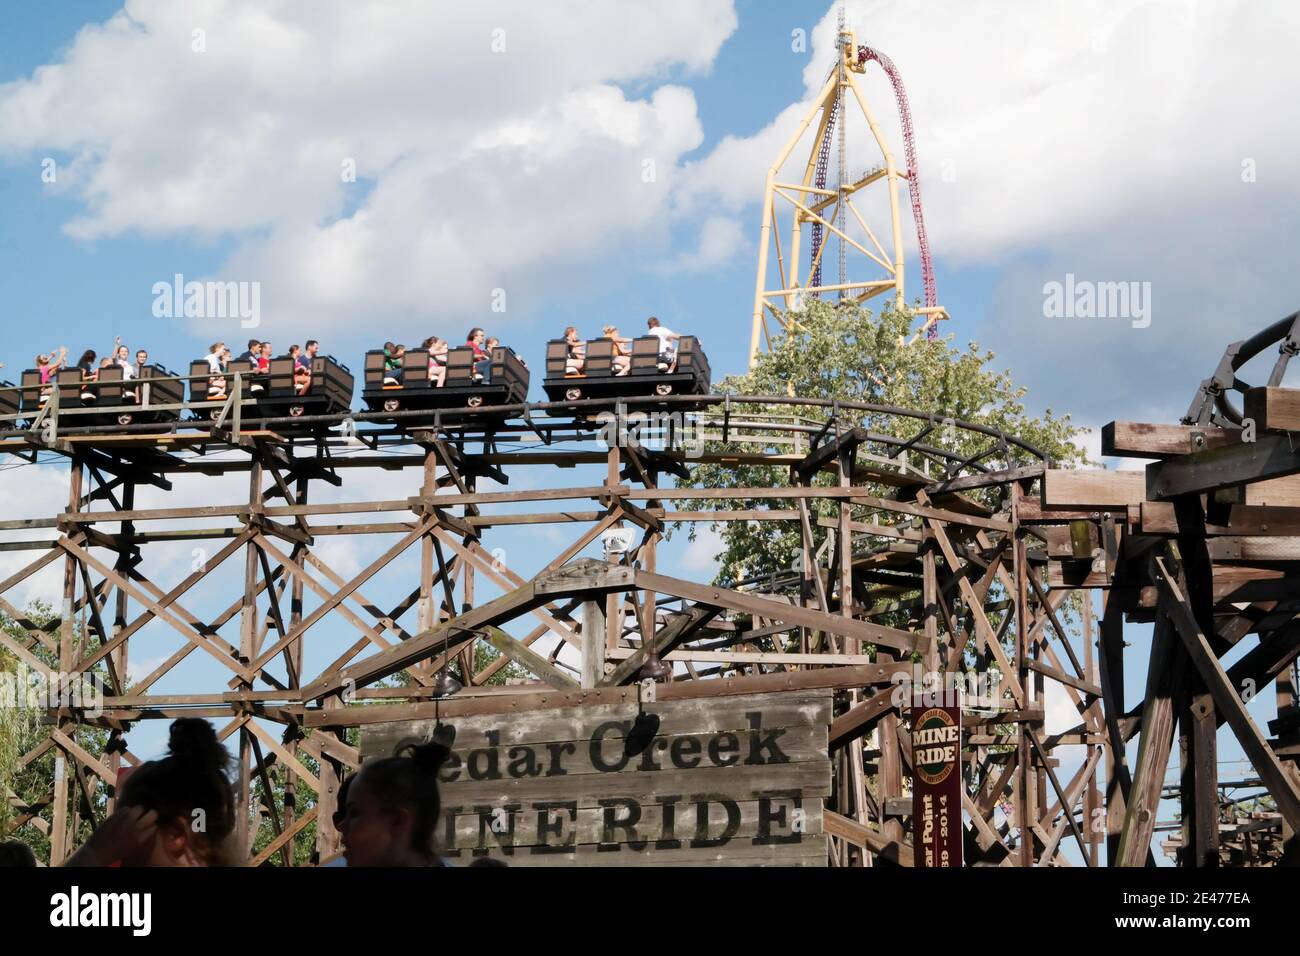 The Cedar Creek Mine Ride on a summer day at Cedar Point amusement park in Sandusky, Ohio, USA. Stock Photo